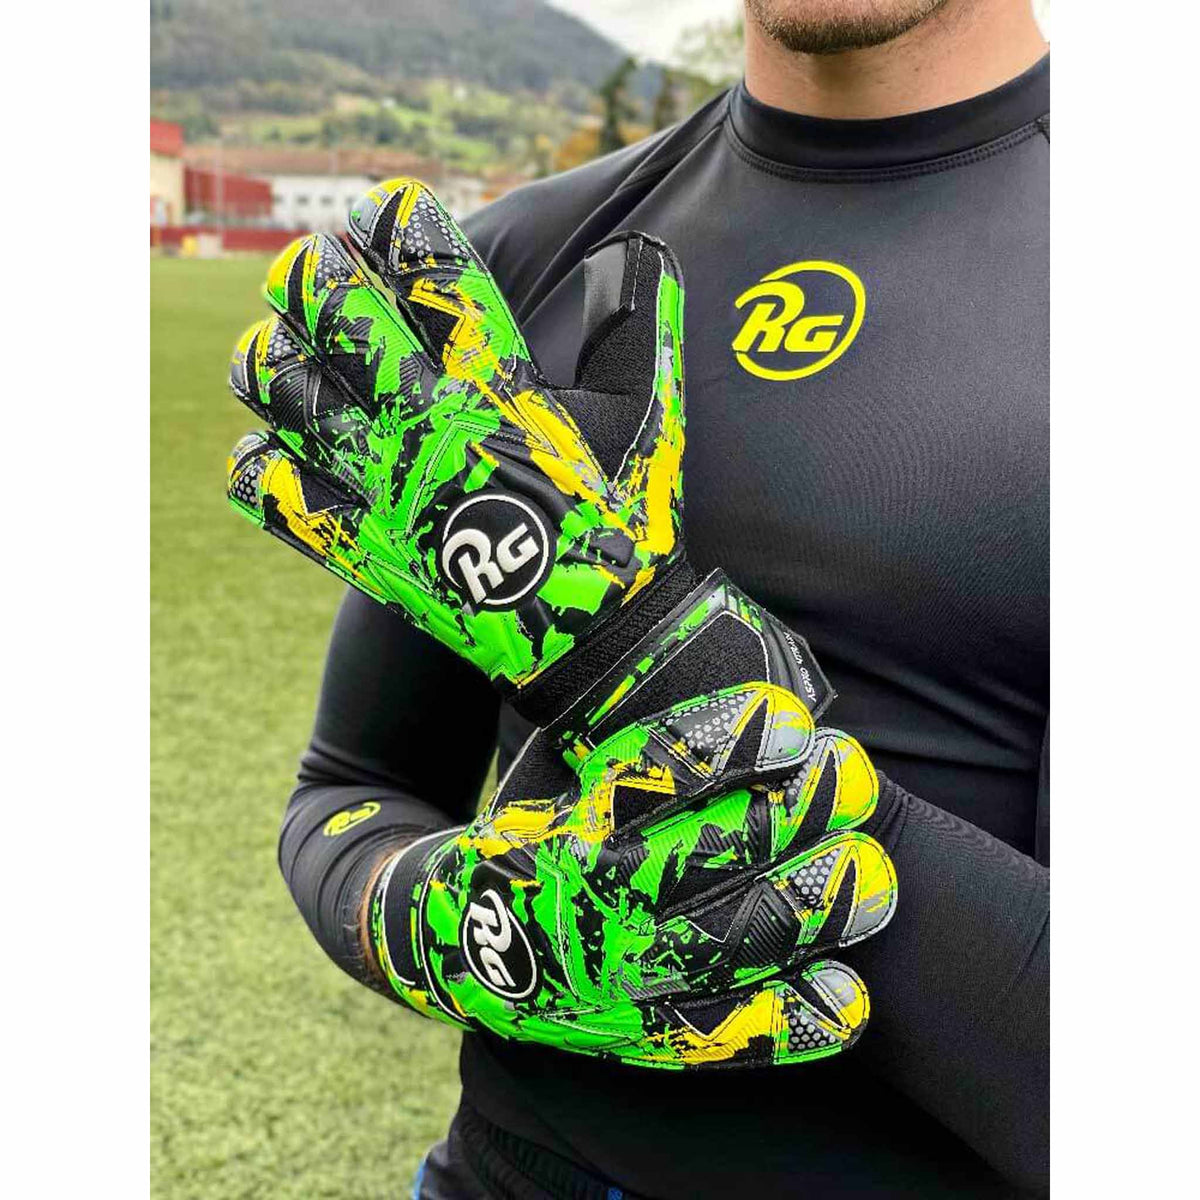 RG Aspro 4TRAIN gants de gardien de but de soccer-live